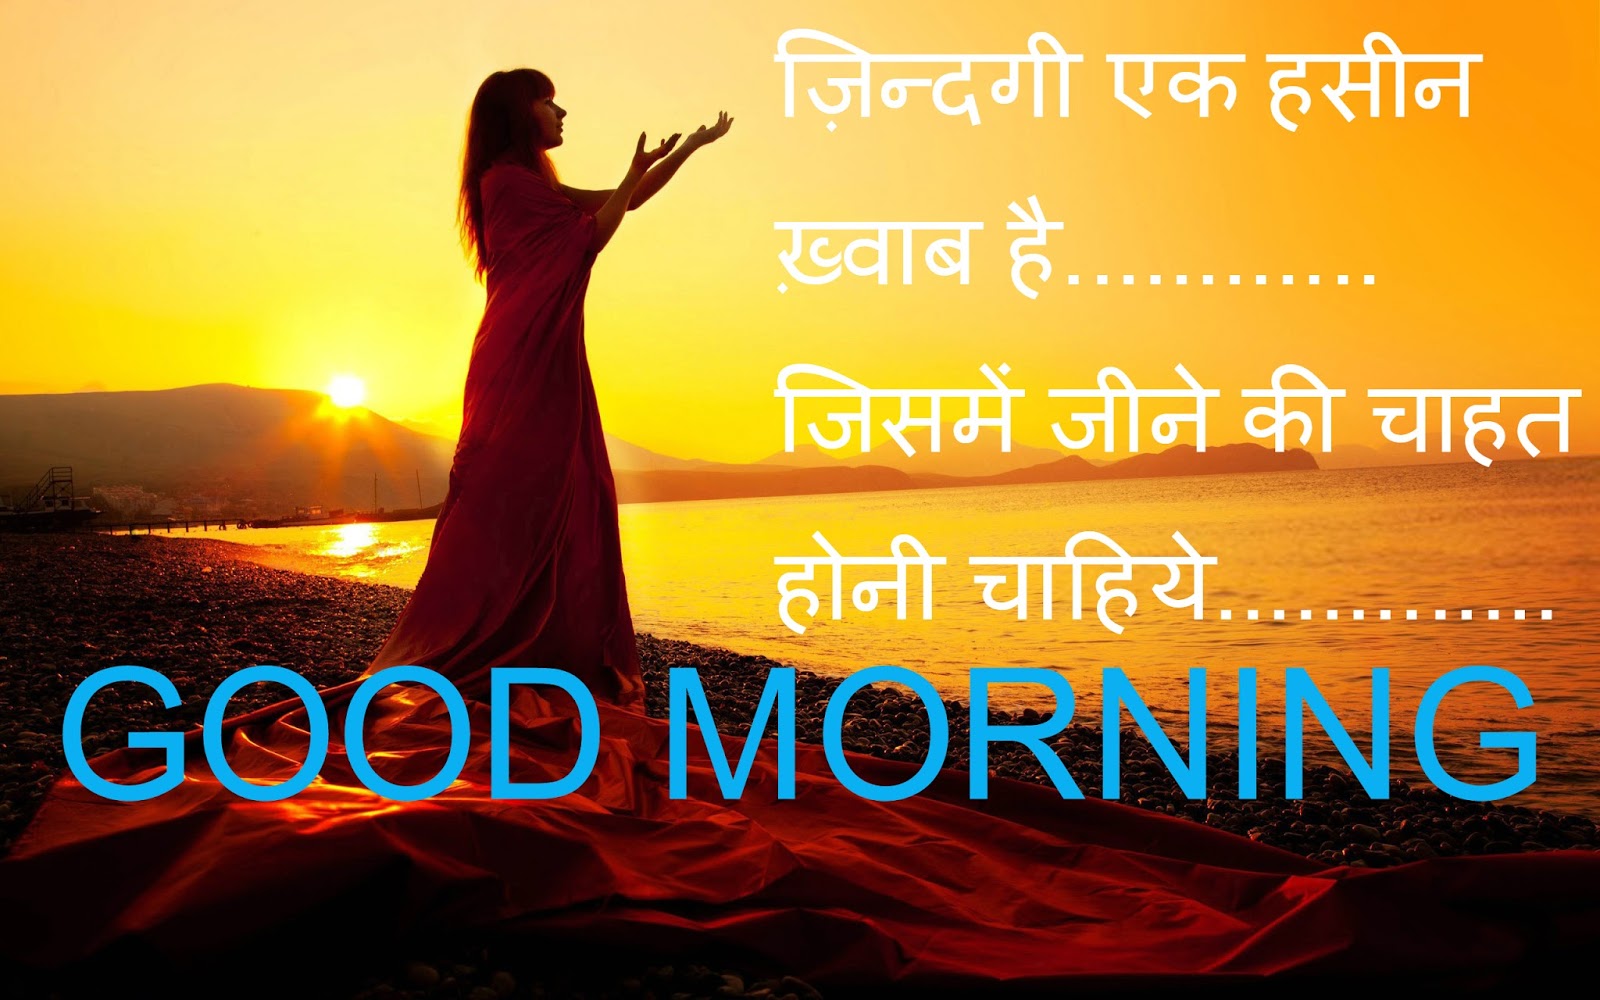 Hindi Shayri Quotes Good Morning Wishes